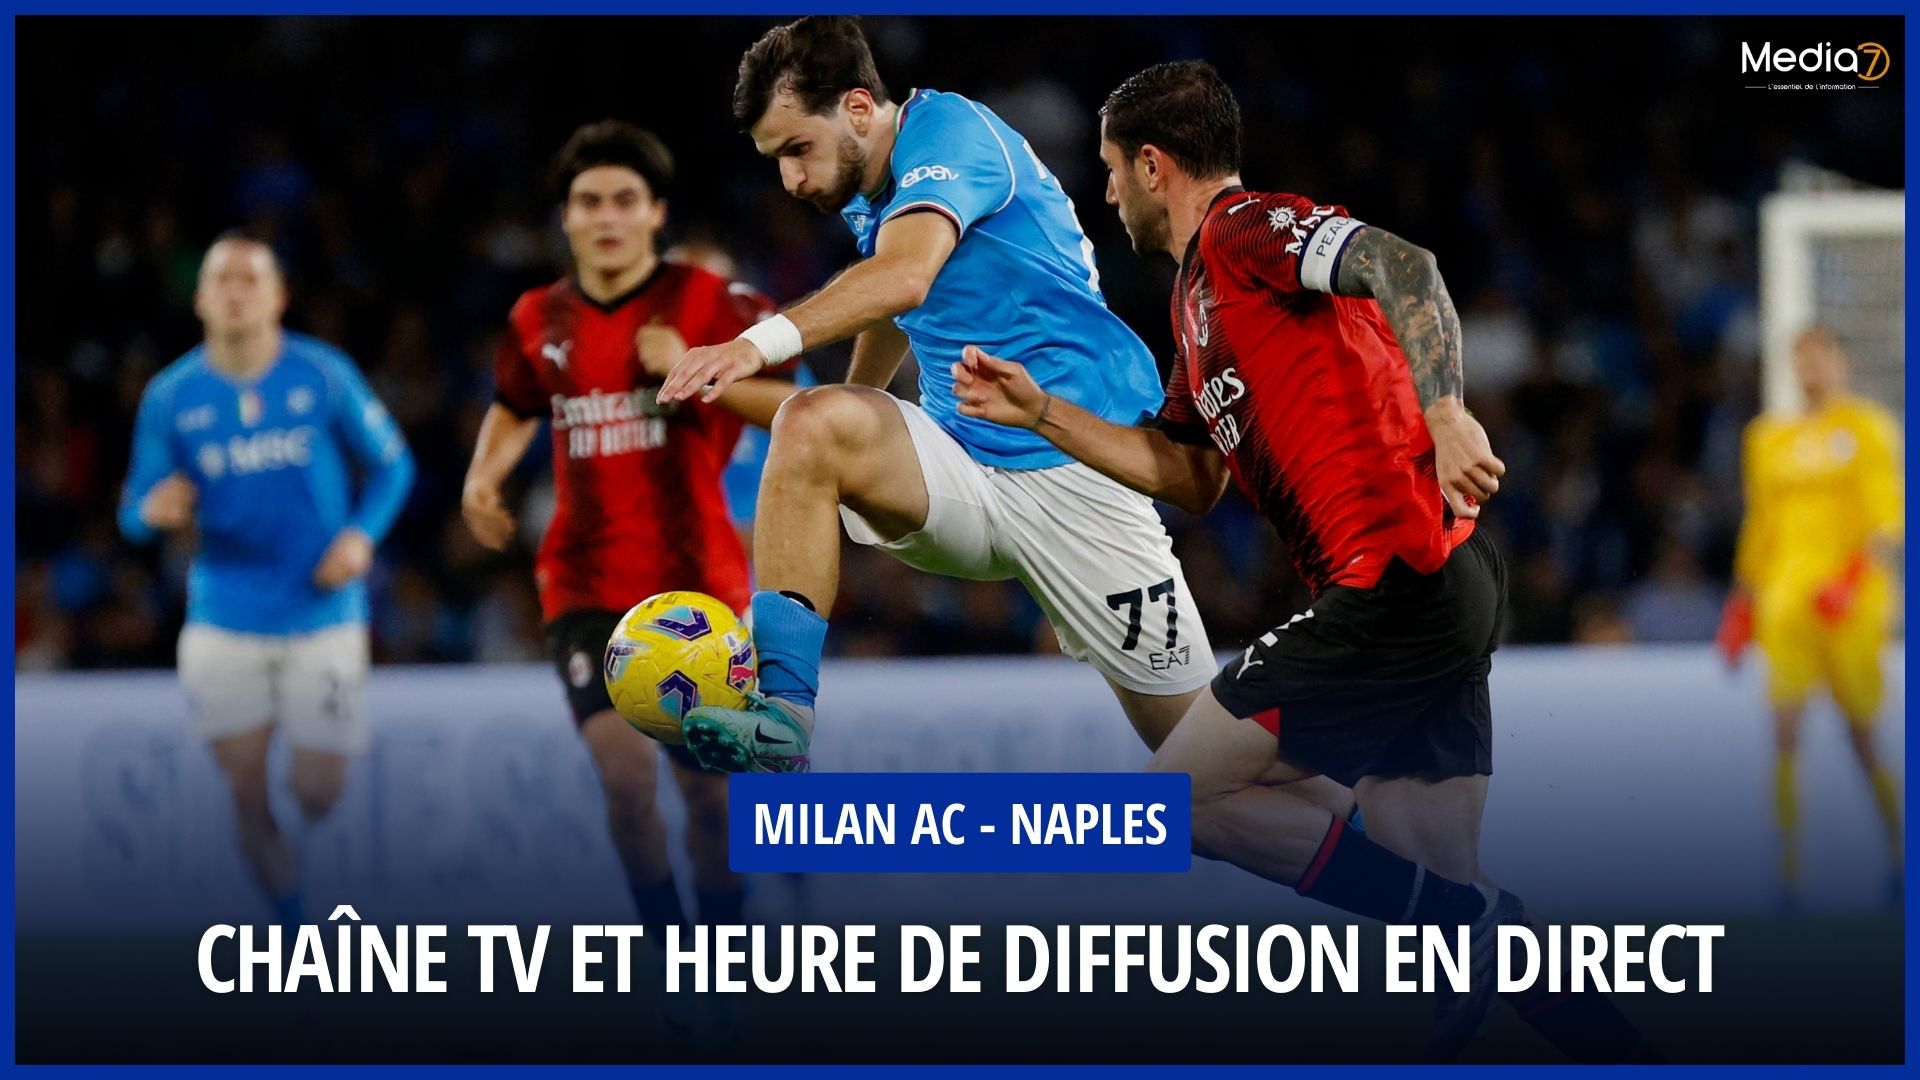 Milan AC - Naples